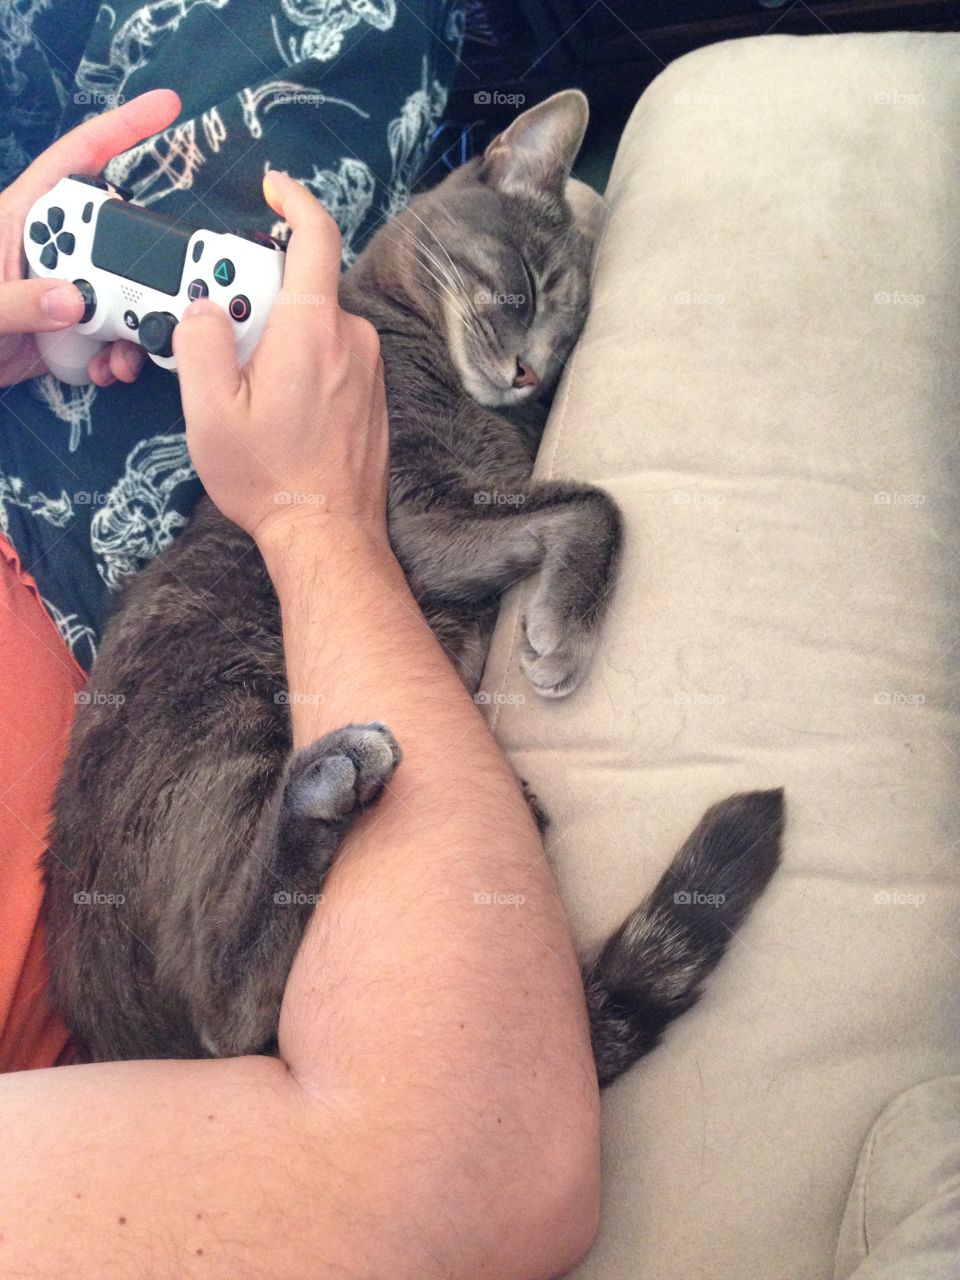 Gaming buddy. Gaming and cats